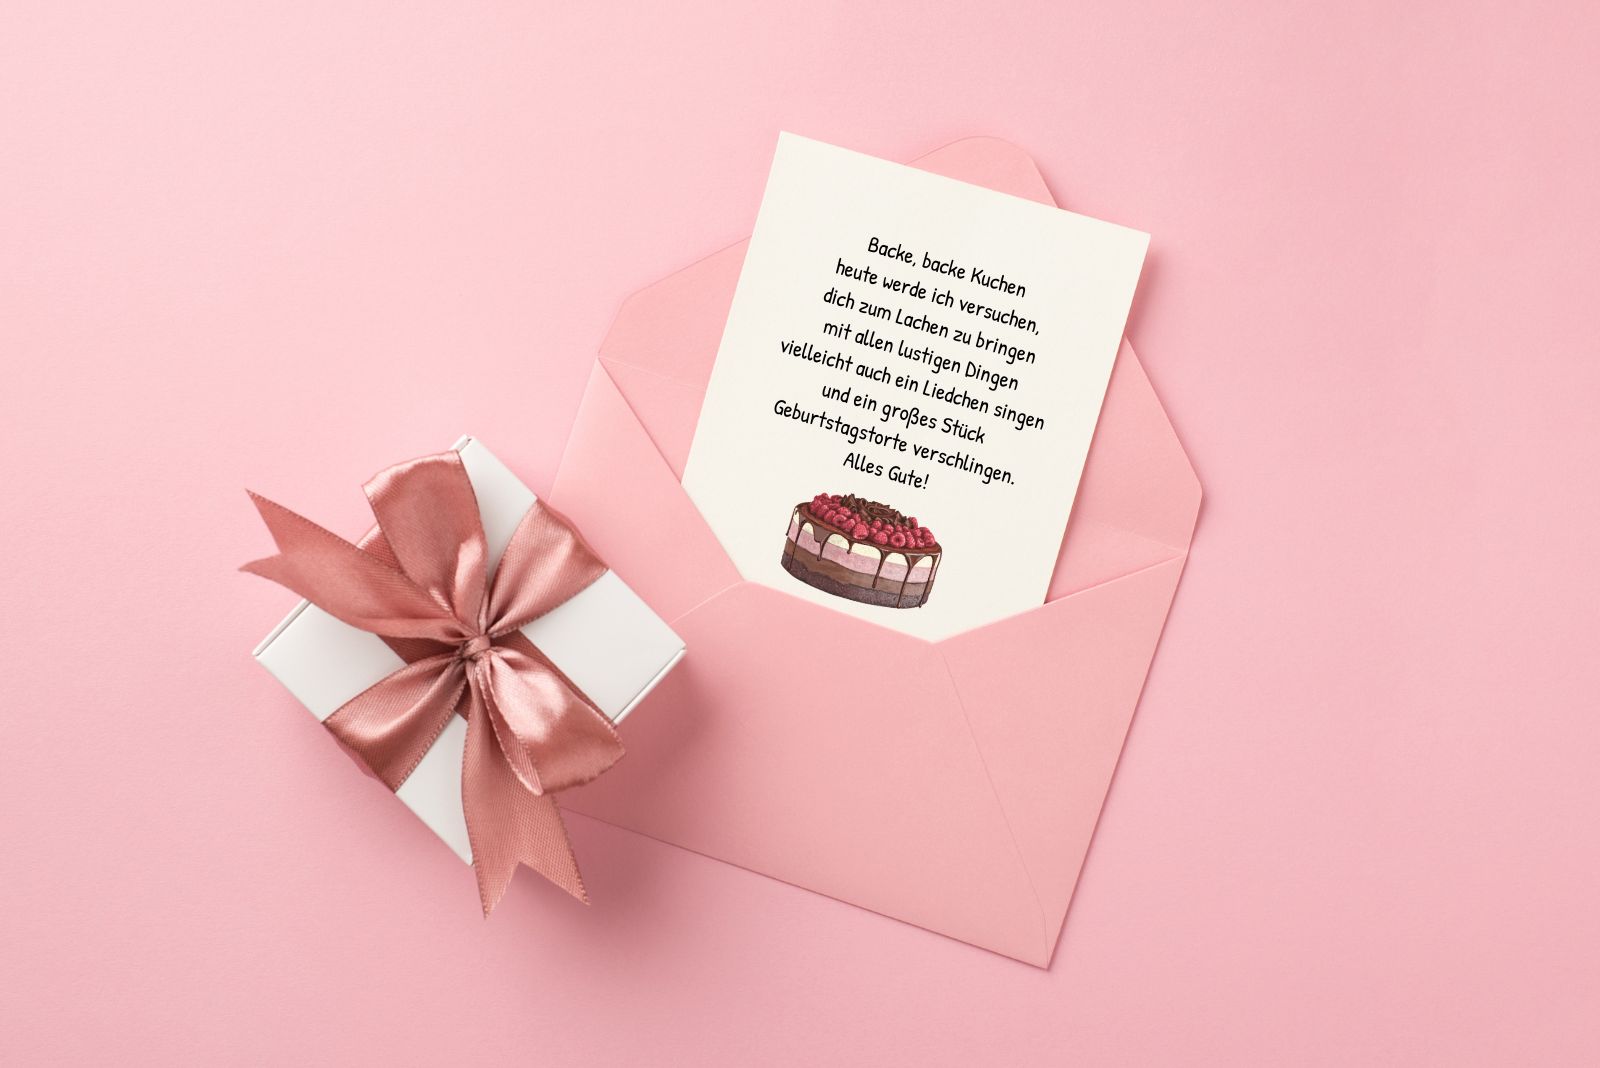 Geburtstagsglückwunsch auf einer Karte mit Tortenmotiv in einem rosa Umschlag